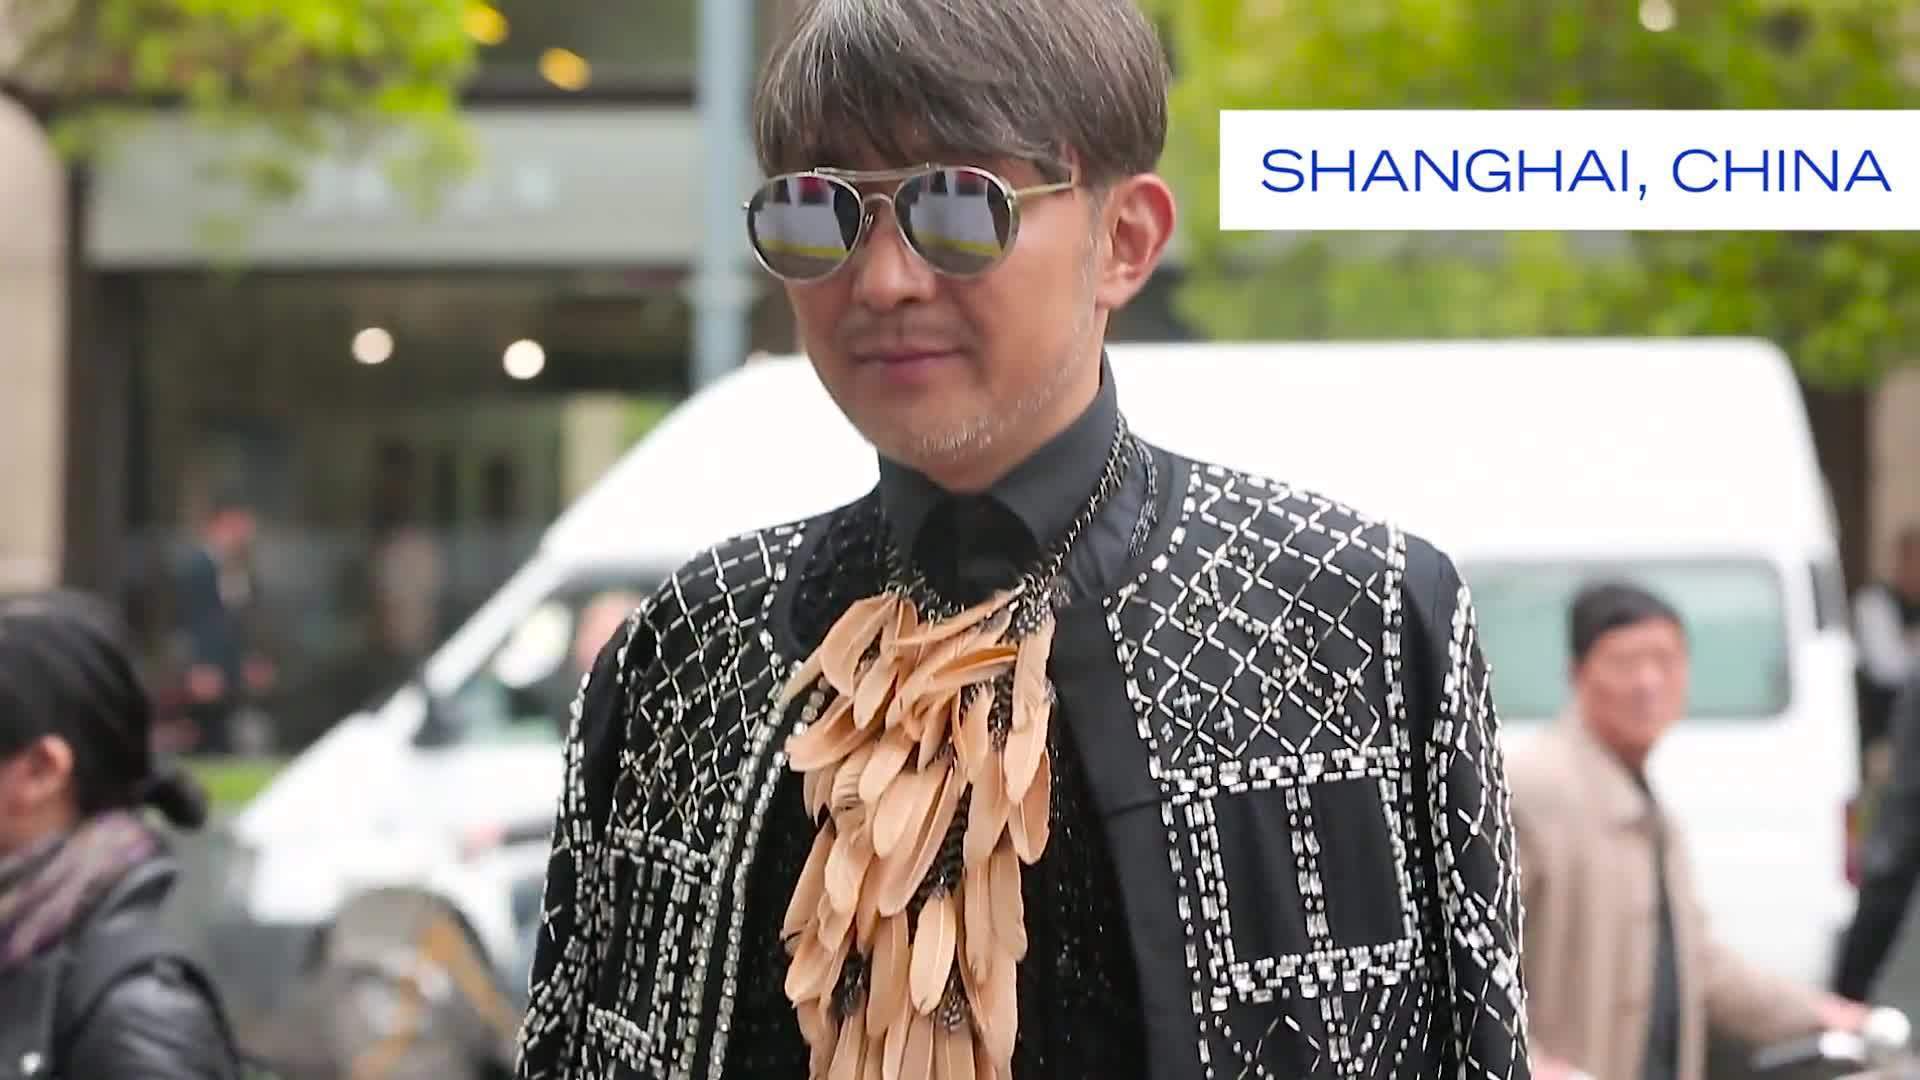 Shanghai Fashion Show - Part 2